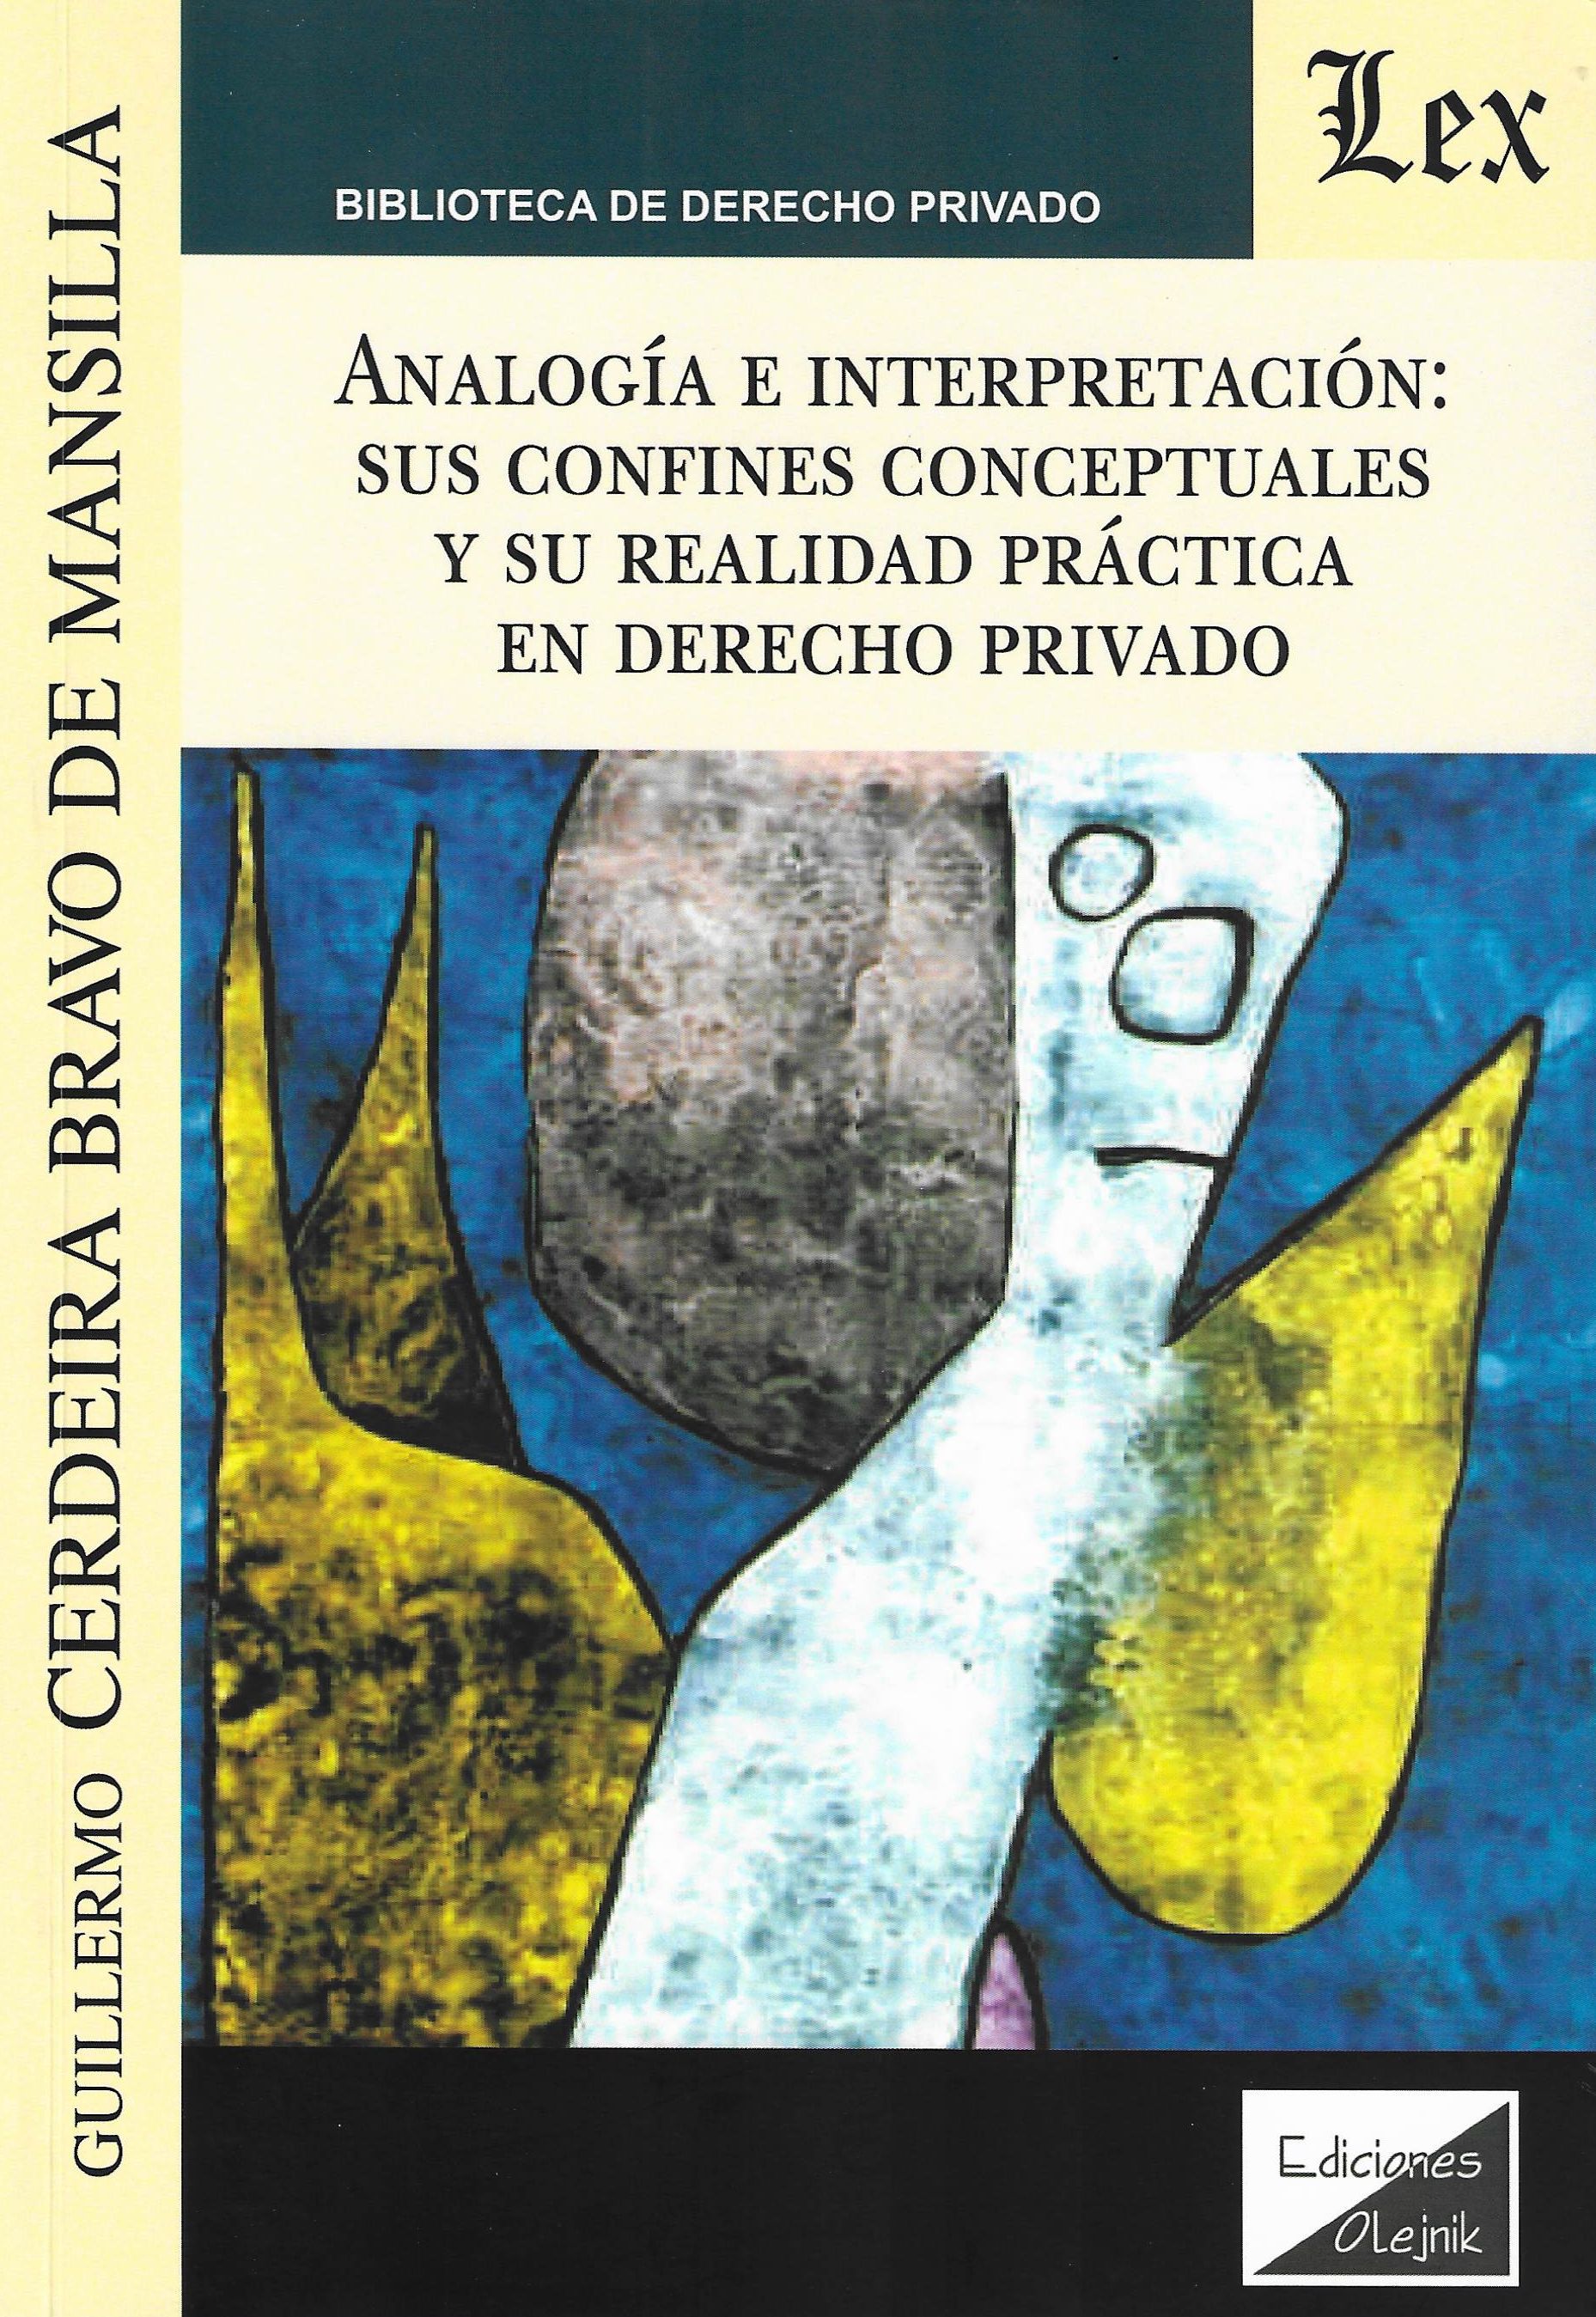 Imagen de portada del libro Analogía e interpretación